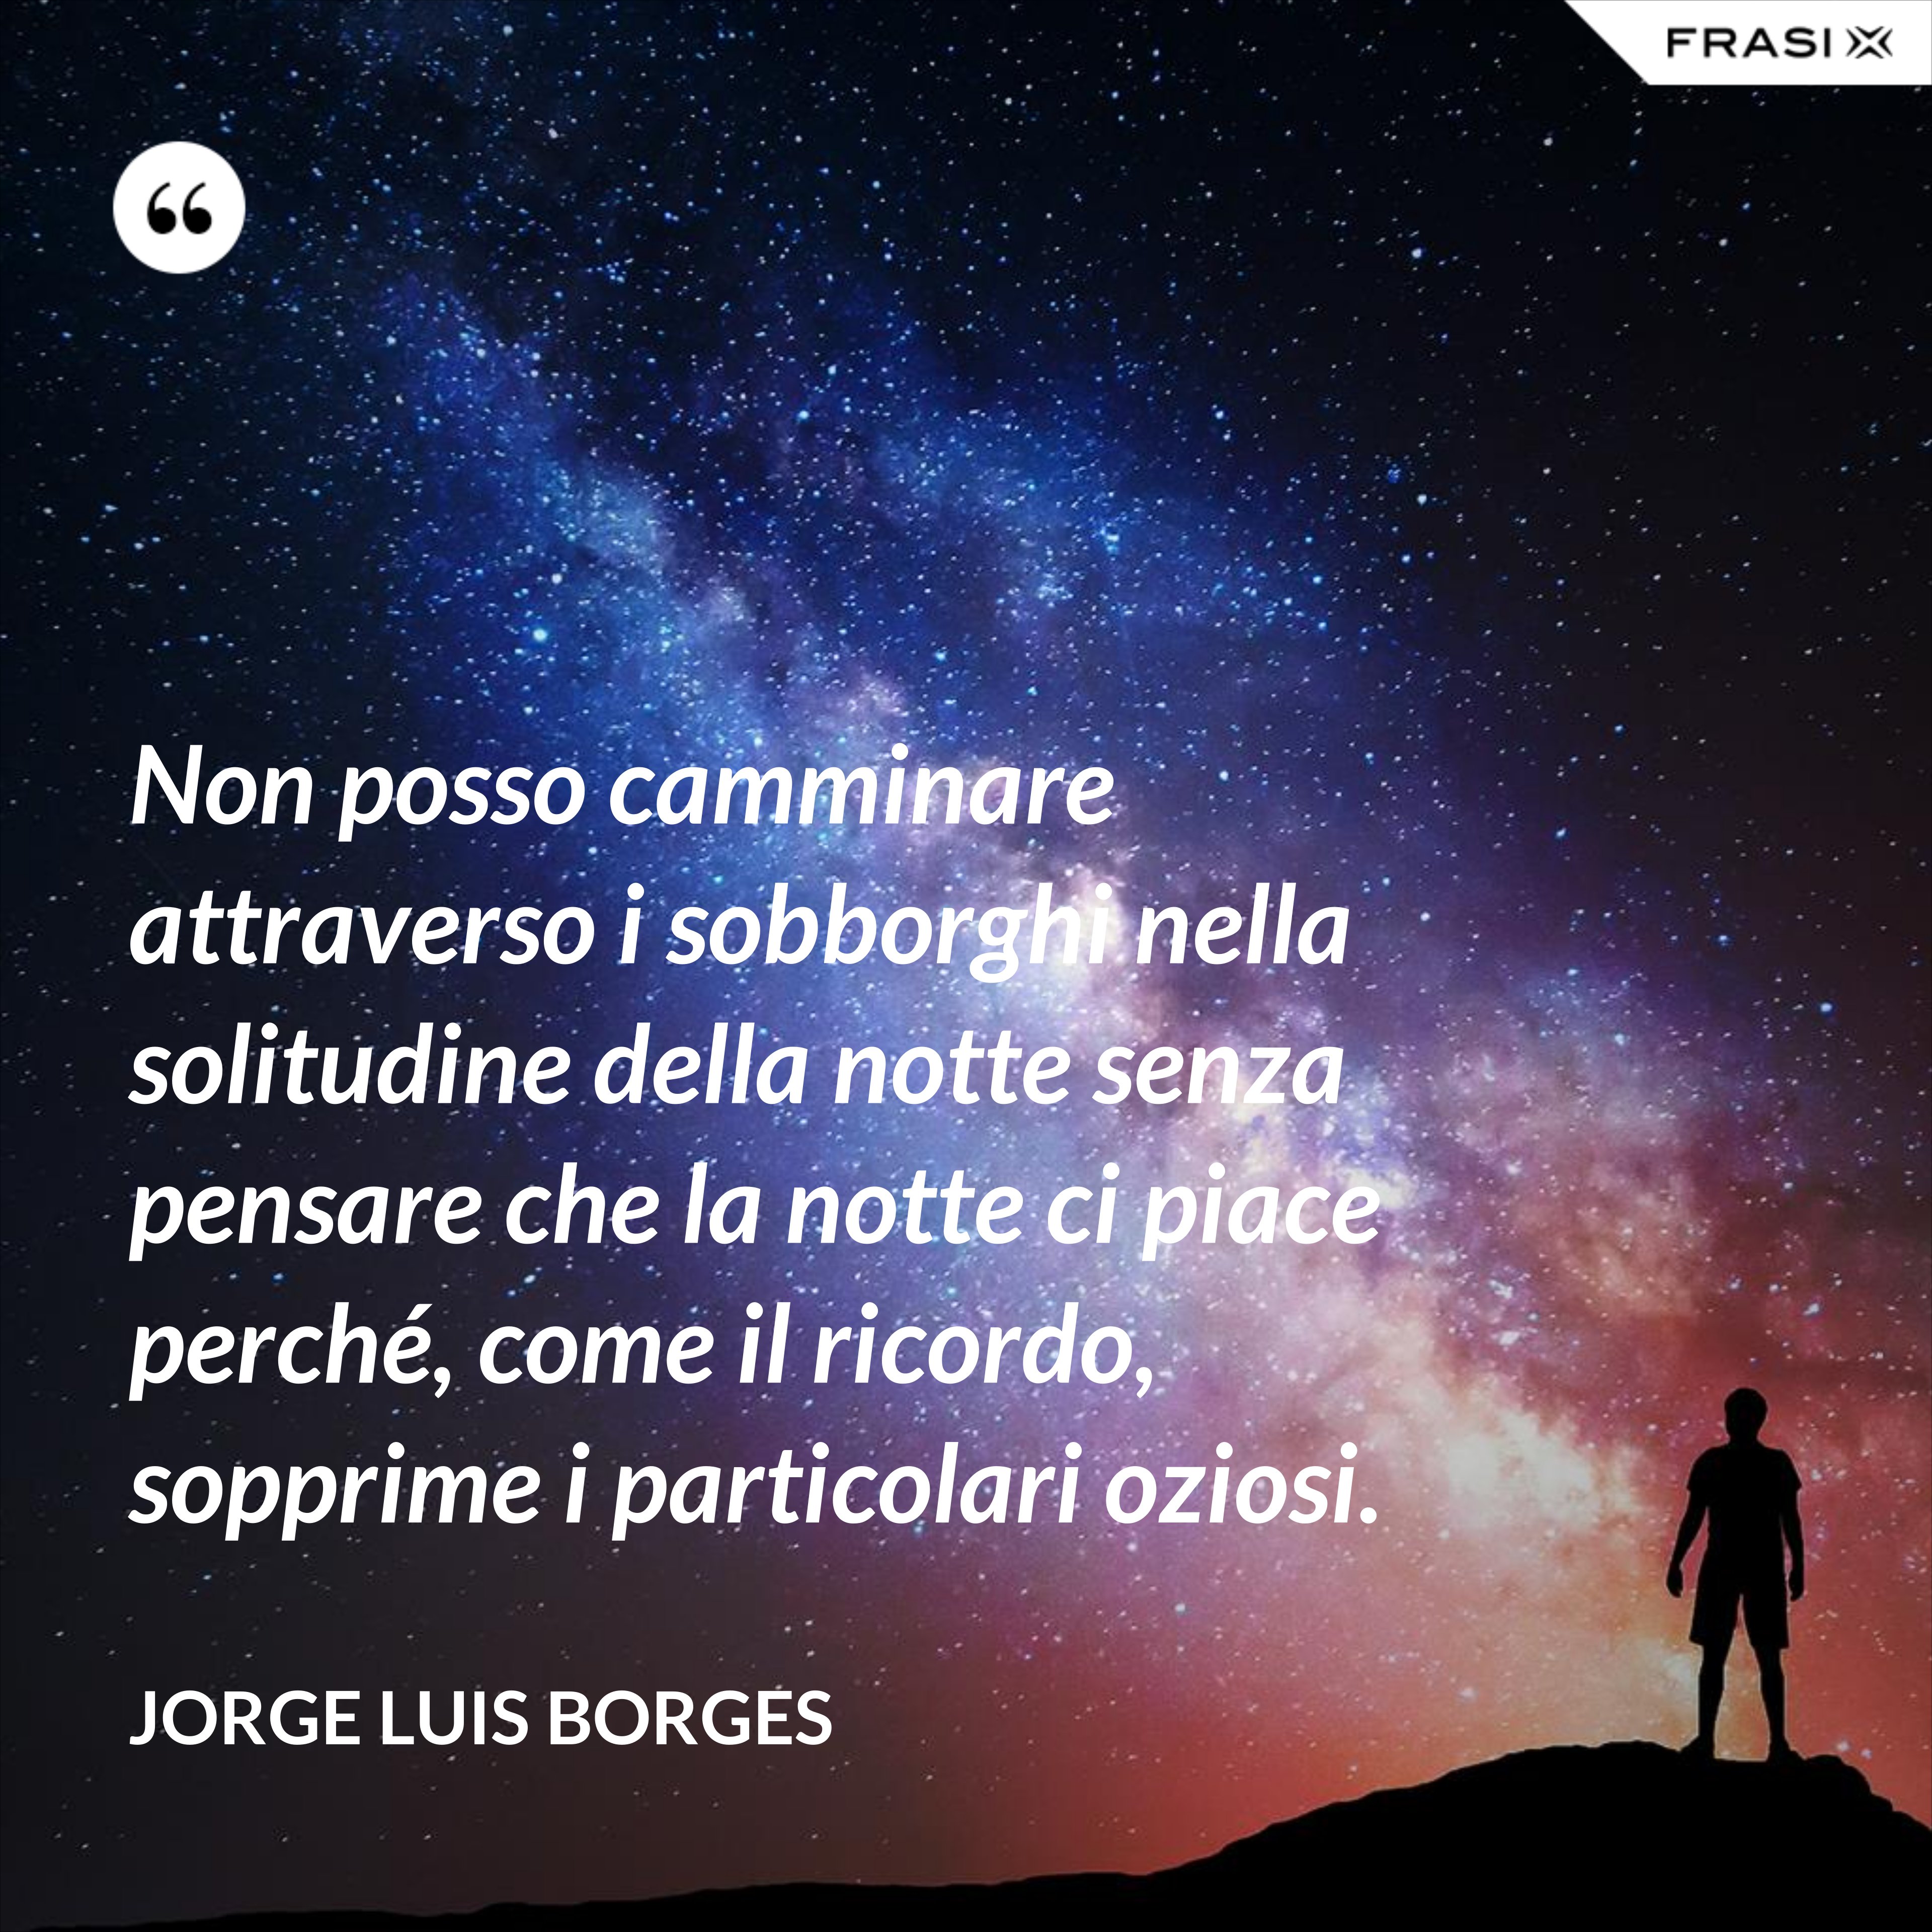 Non posso camminare attraverso i sobborghi nella solitudine della notte senza pensare che la notte ci piace perché, come il ricordo, sopprime i particolari oziosi. - Jorge Luis Borges